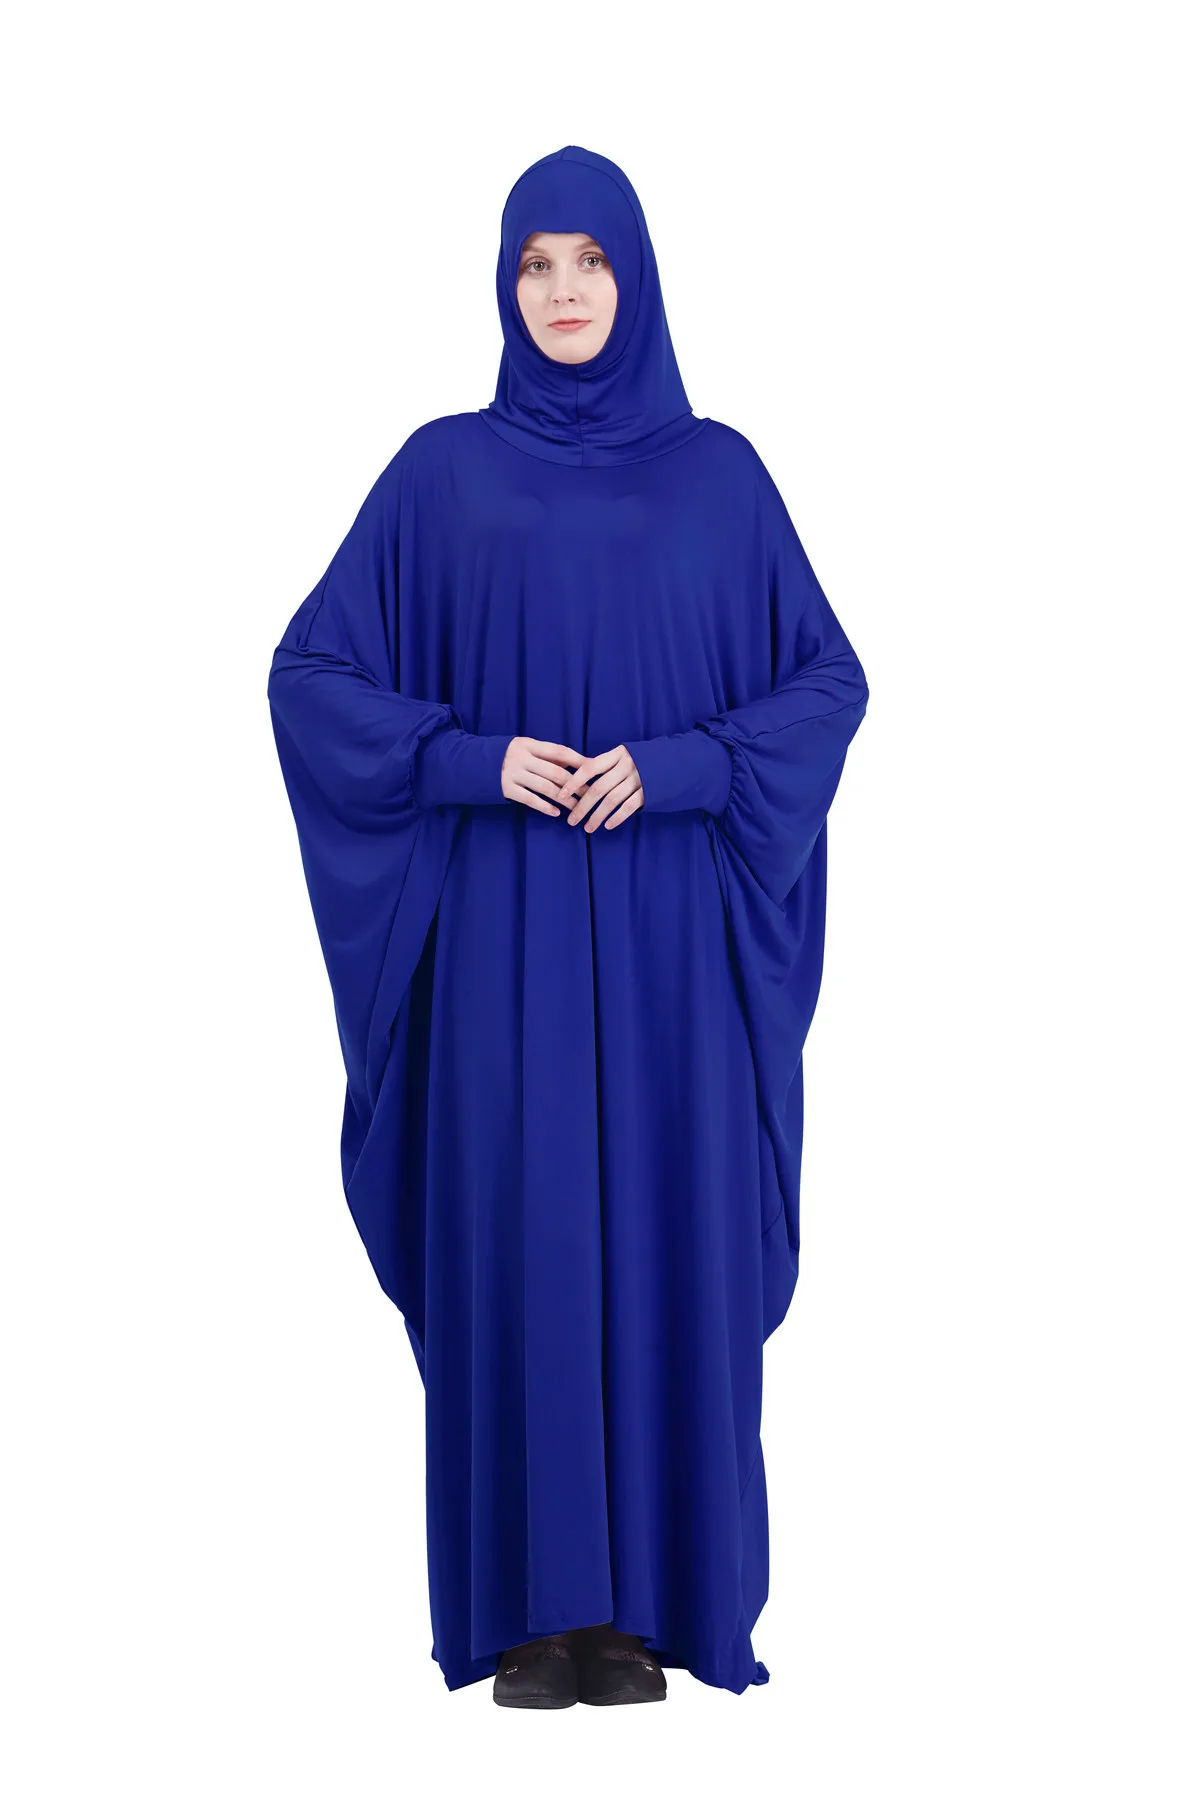 Namaz Elbise Kadın Ramazan İslam Giyim Resmi Müslüman Konfeksiyon Kapşonlu Dubai Türkiye Namaz Uzun Jurken Abaya Başörtüsü Kimono 3